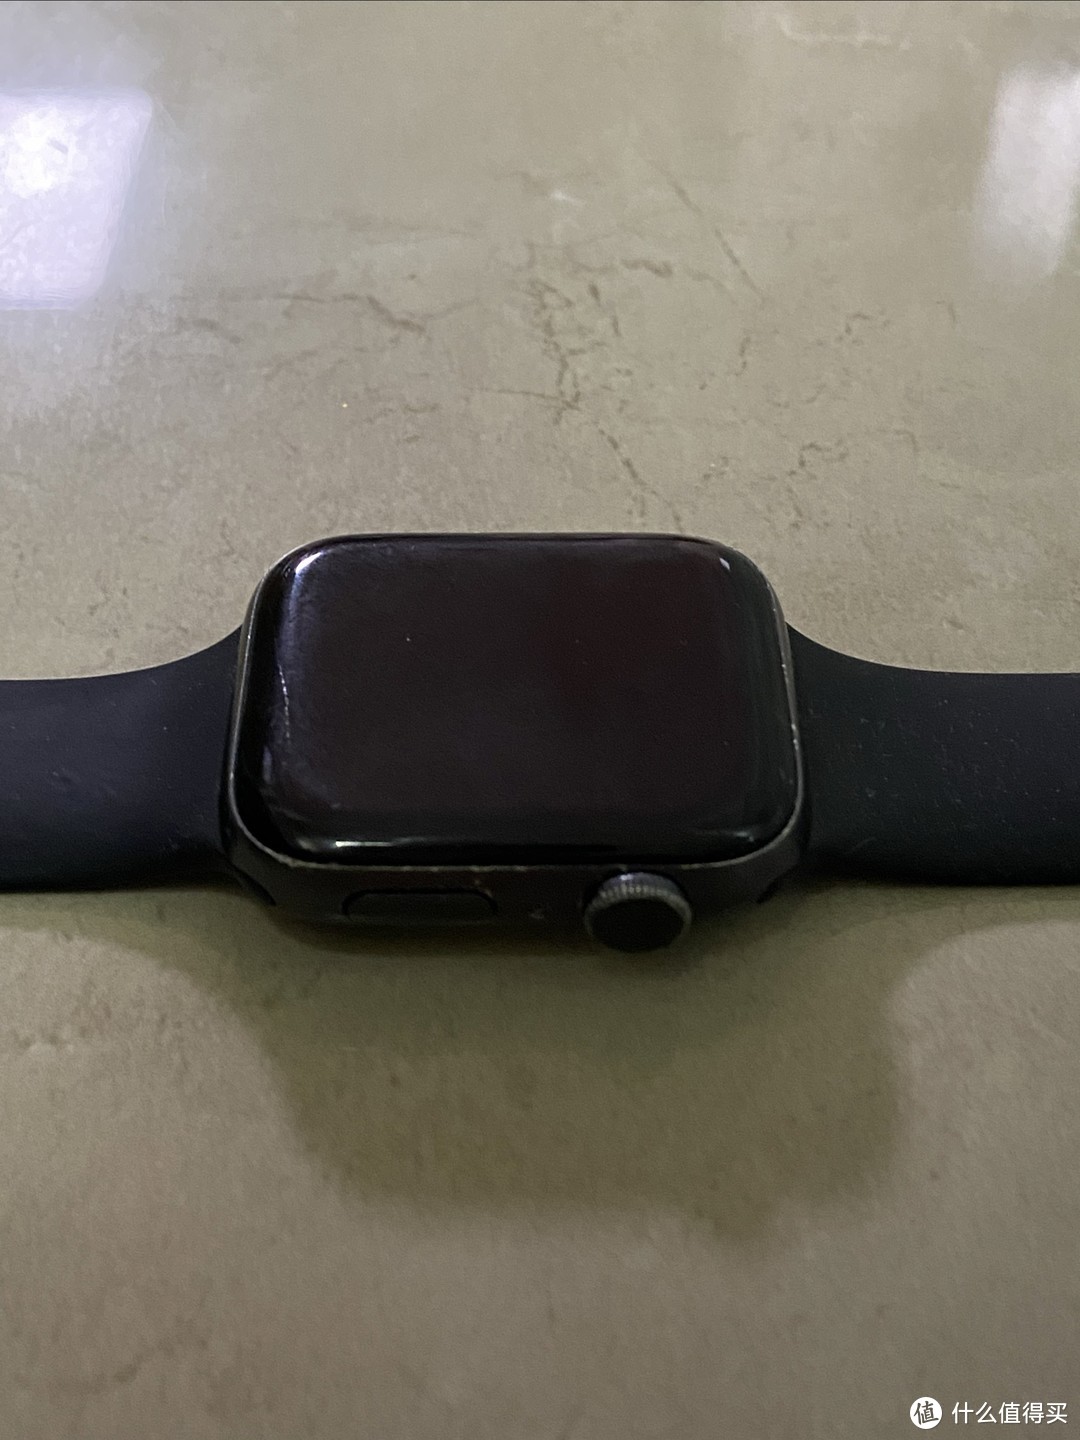 如今Apple Watch已经不再是唯一的选择了，续航太差。